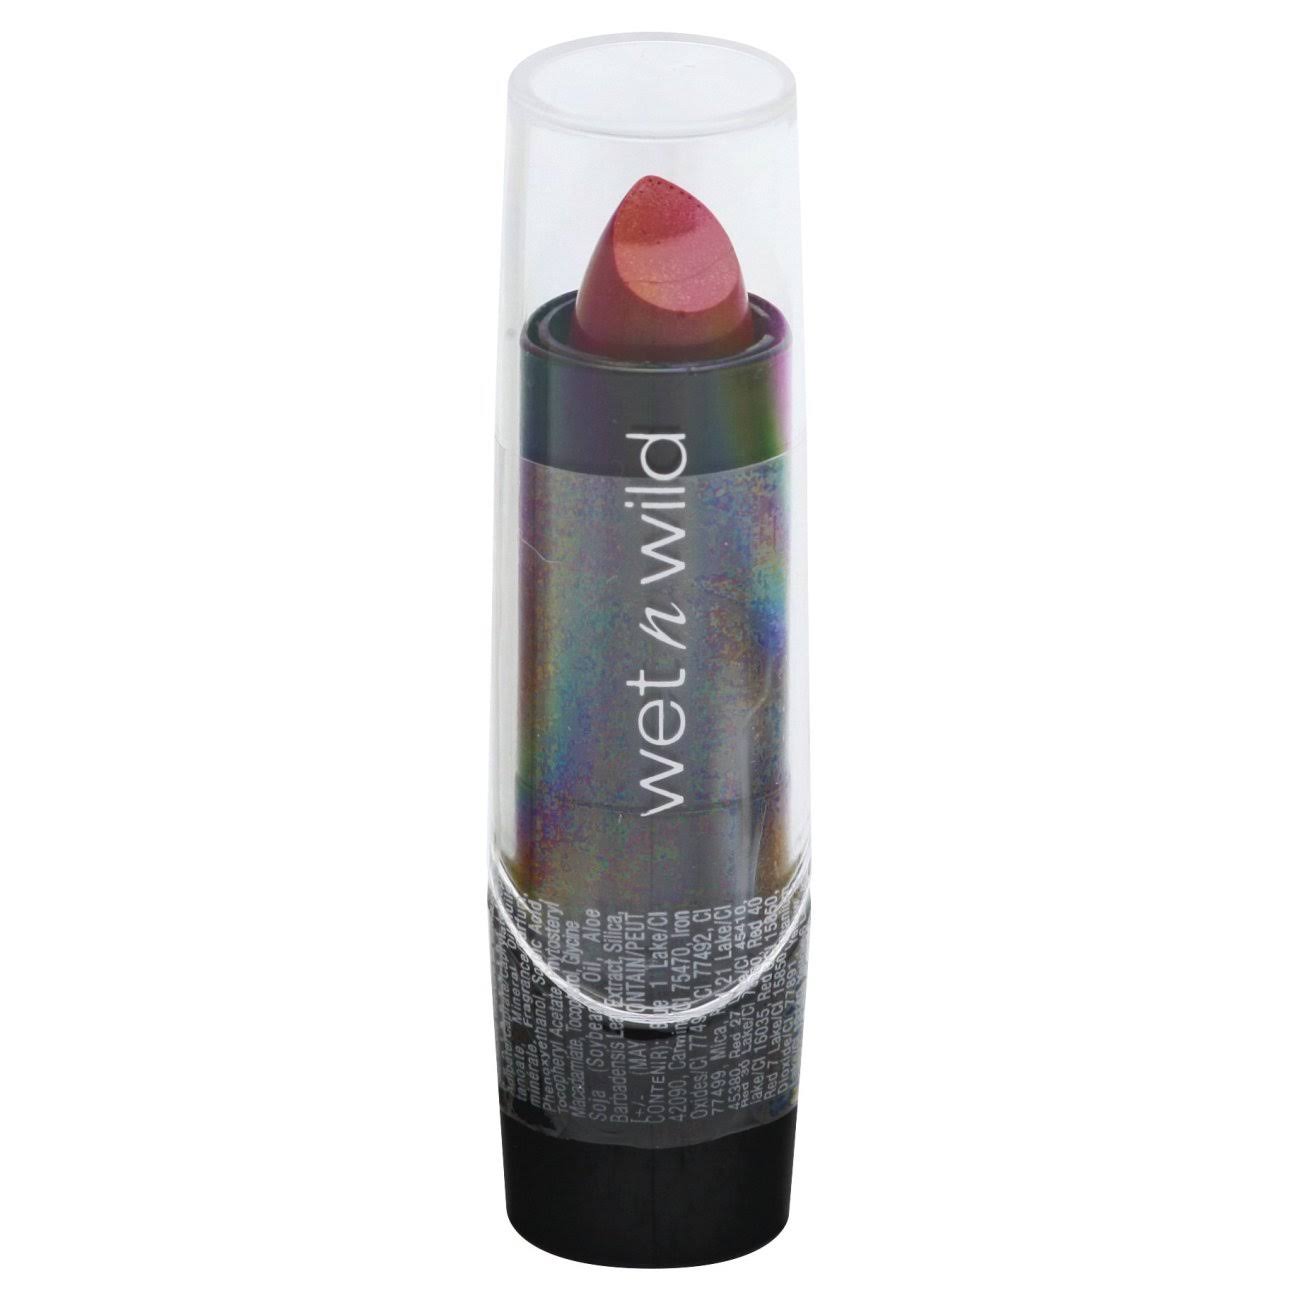 Wet N Wild Lipstick - 539A Cherry Frost, 0.13oz